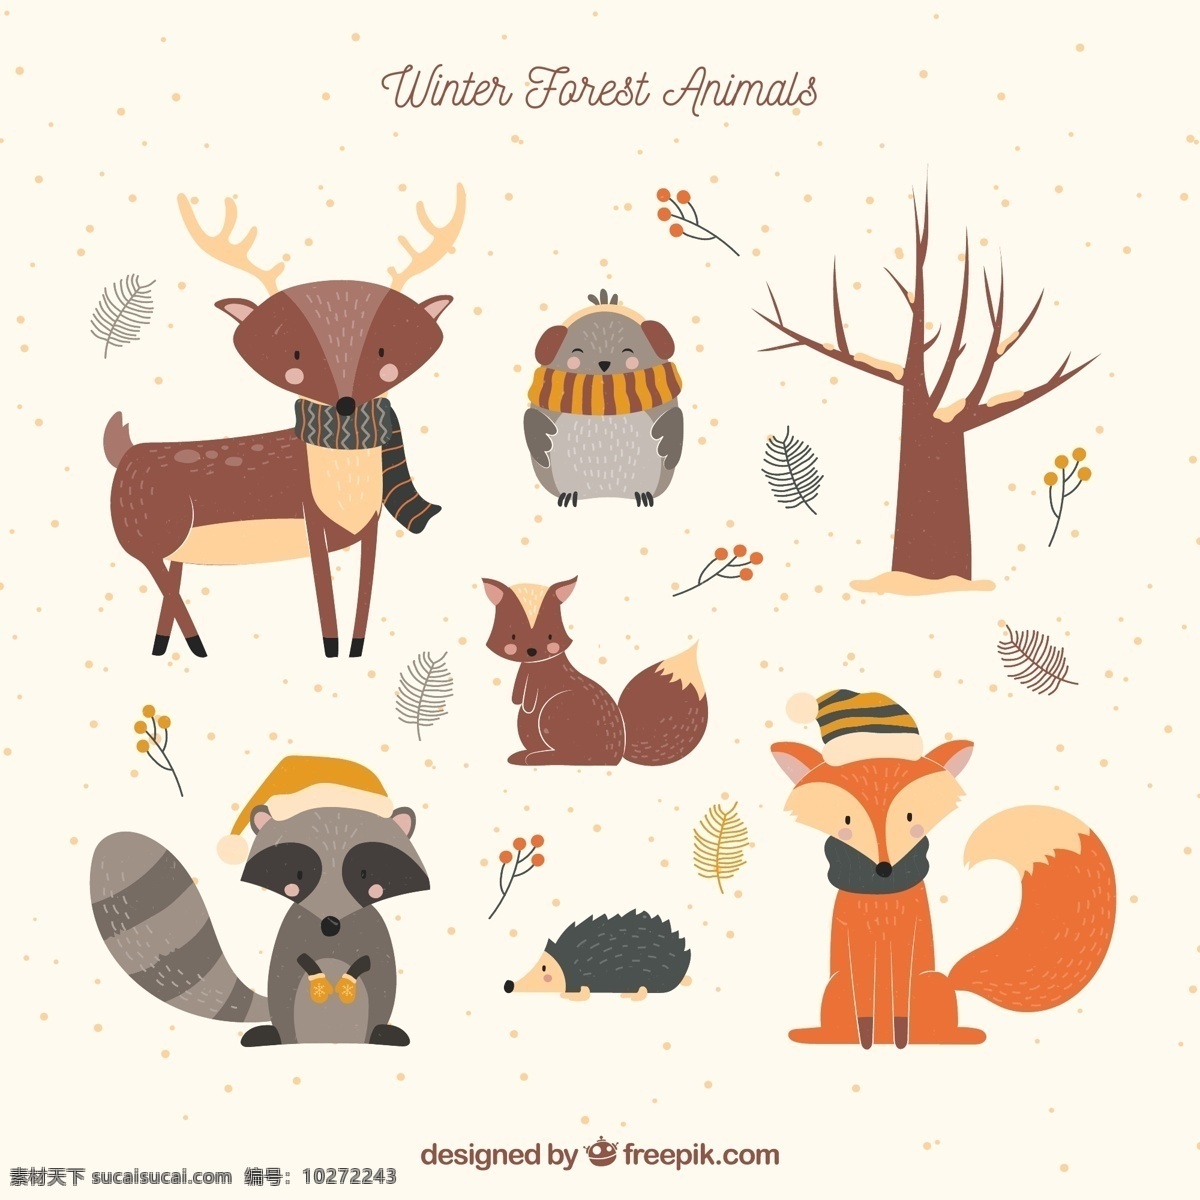 款 创意 冬季 森林 动物 鹿 猫头鹰 树木 树叶 松鼠 狐狸 刺猬 浣熊 文化艺术 绘画书法